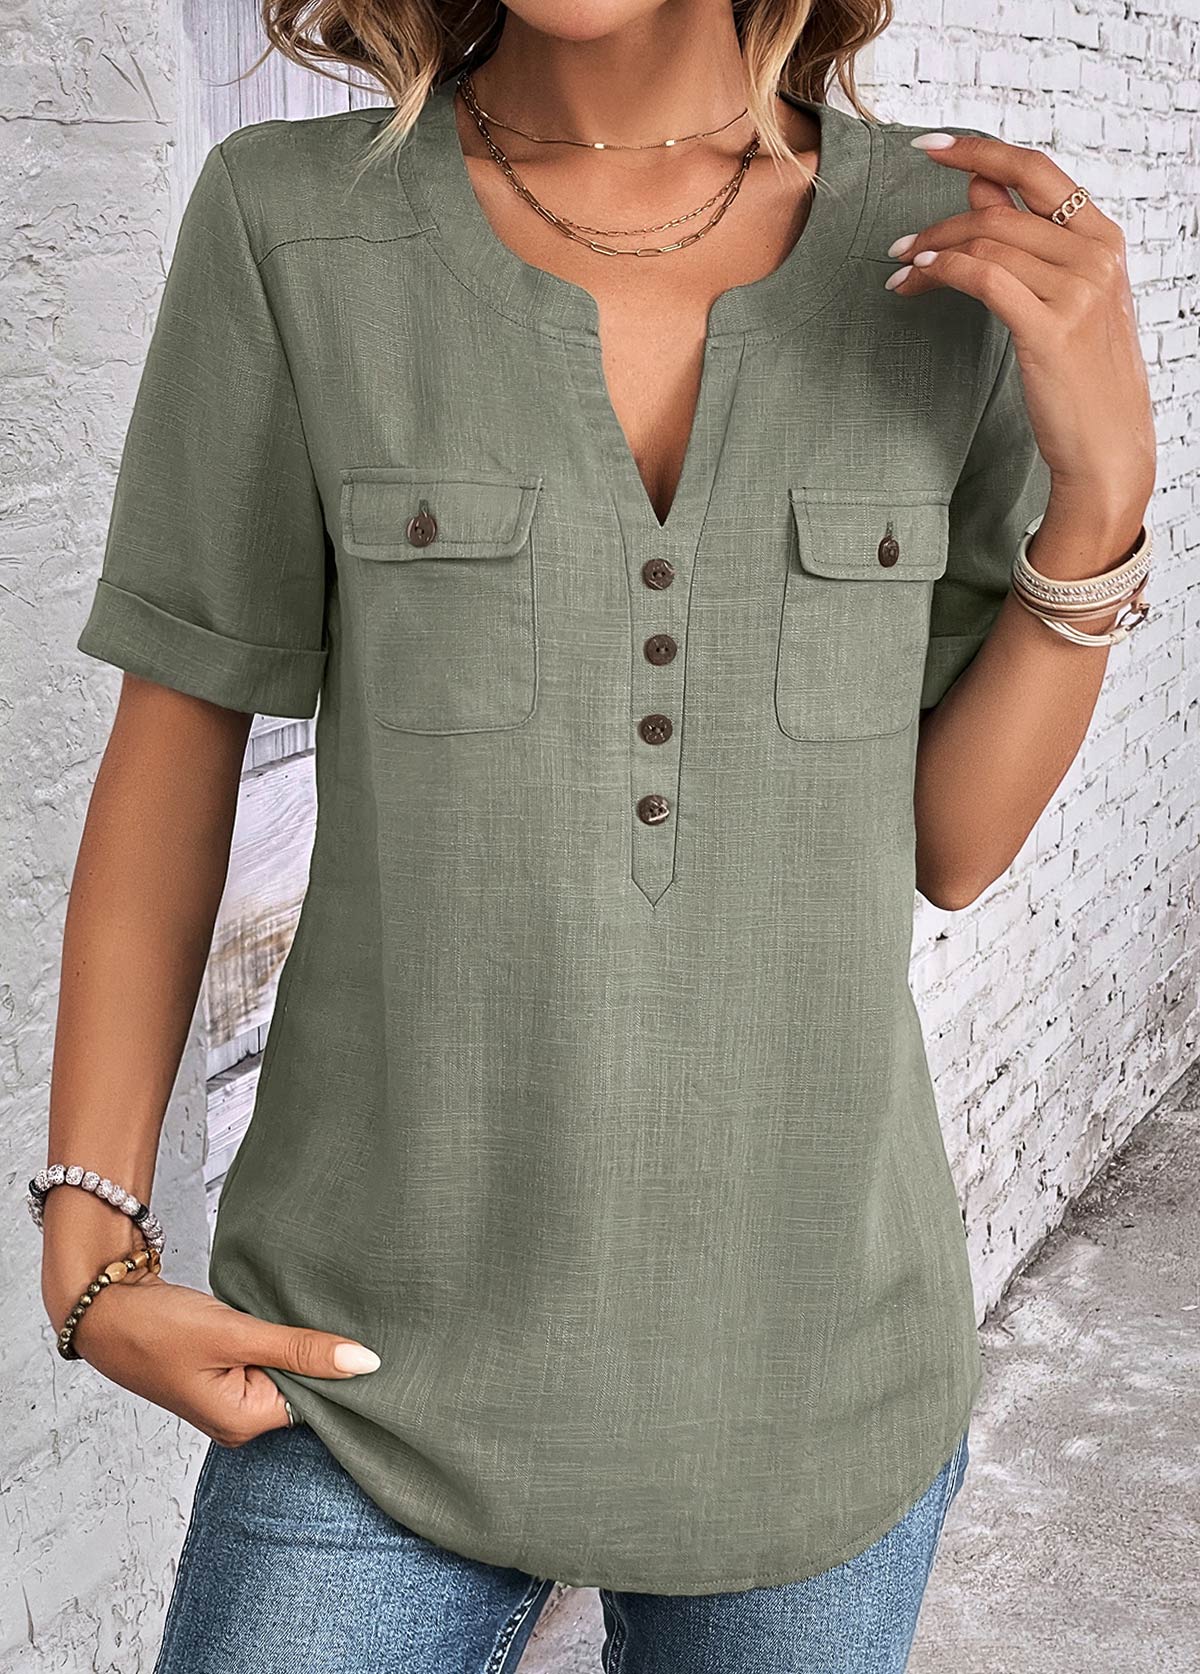 Salbeigrüne kurzärmlige Bluse mit Rotita-Knopf und geteiltem Ausschnitt